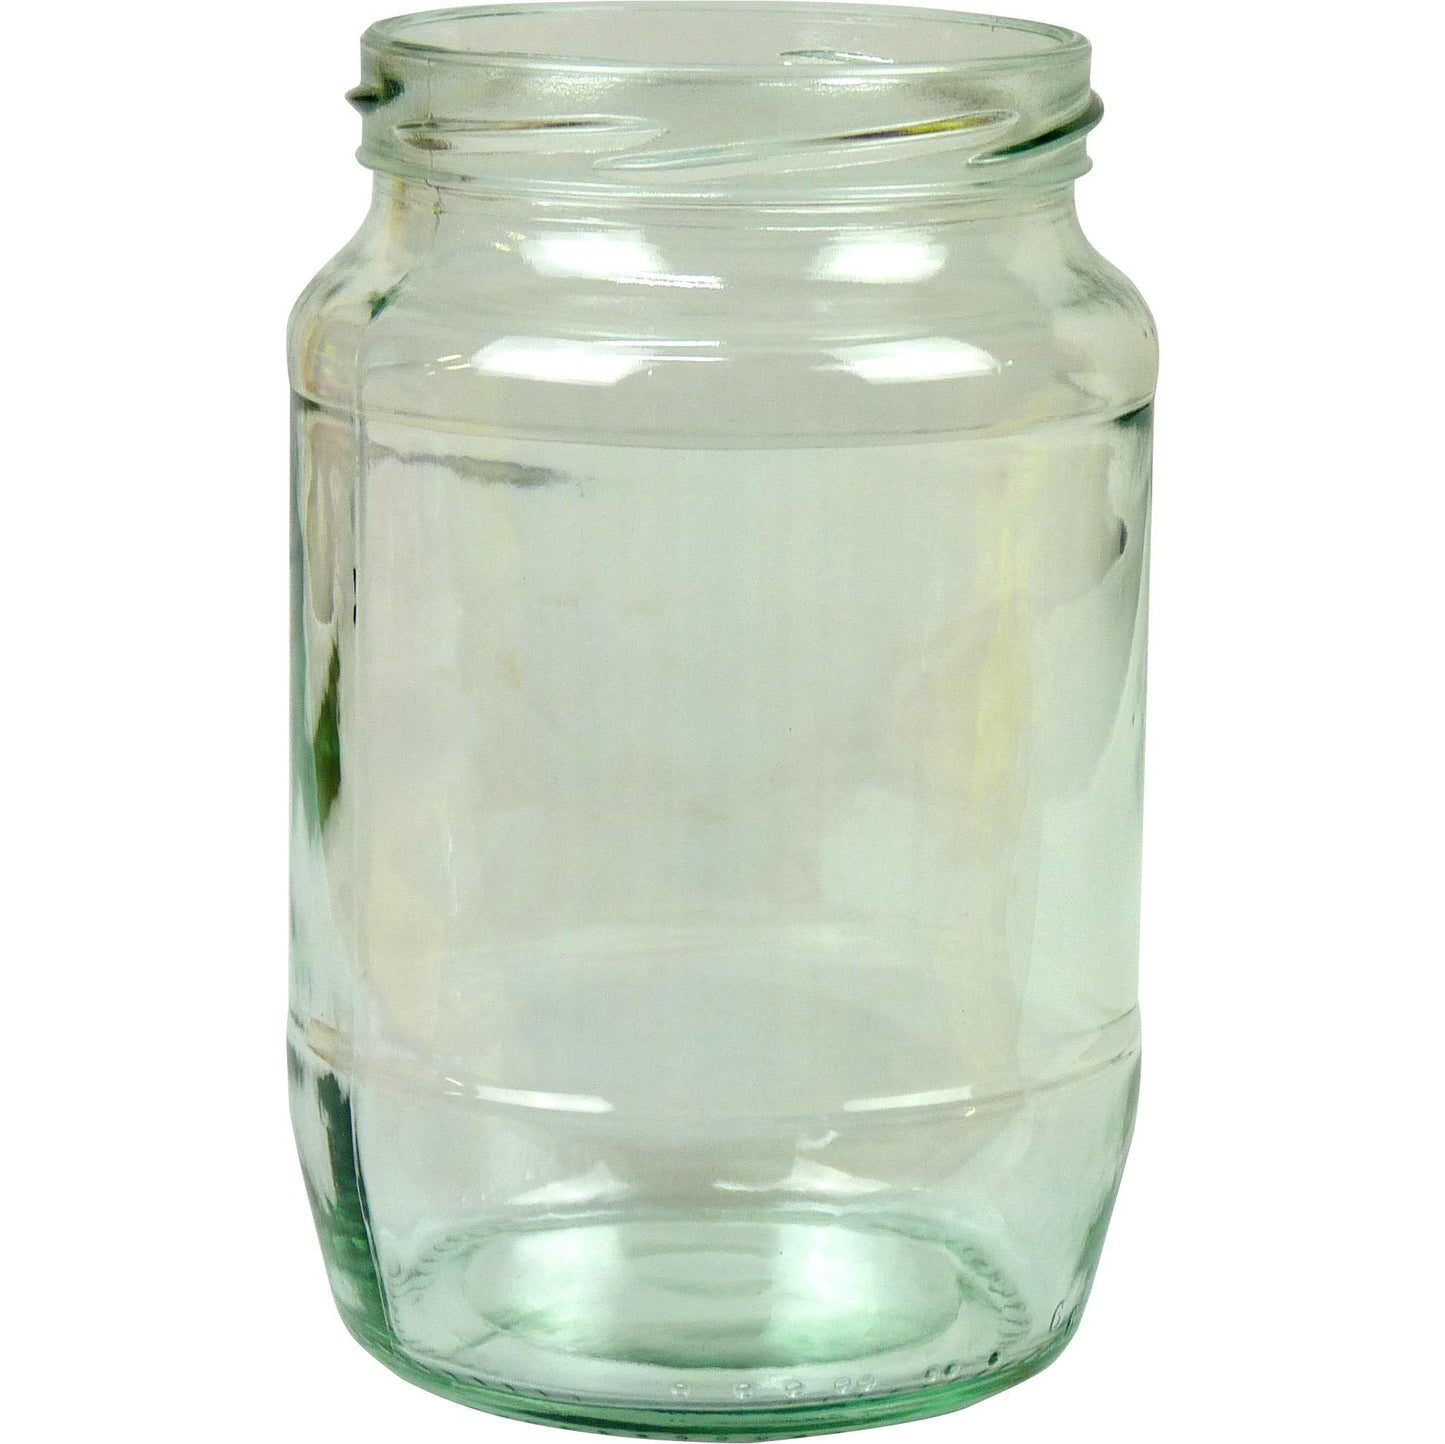 1Kg Glass Jar - For Hornet Trap - Bee Equipment